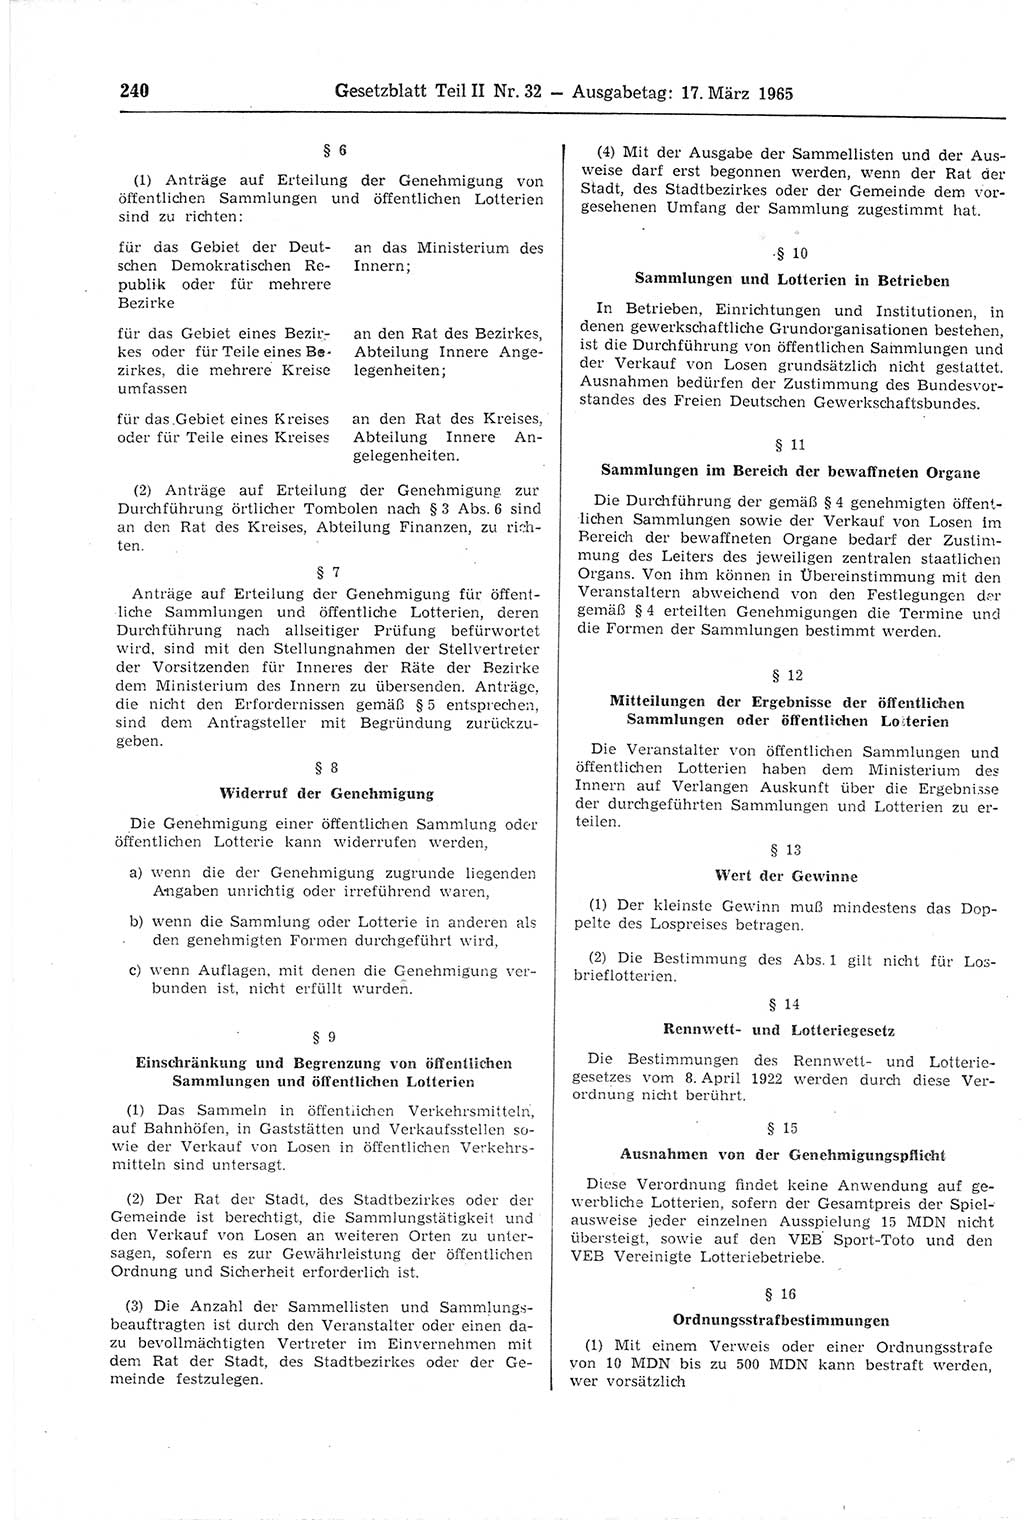 Gesetzblatt (GBl.) der Deutschen Demokratischen Republik (DDR) Teil ⅠⅠ 1965, Seite 240 (GBl. DDR ⅠⅠ 1965, S. 240)